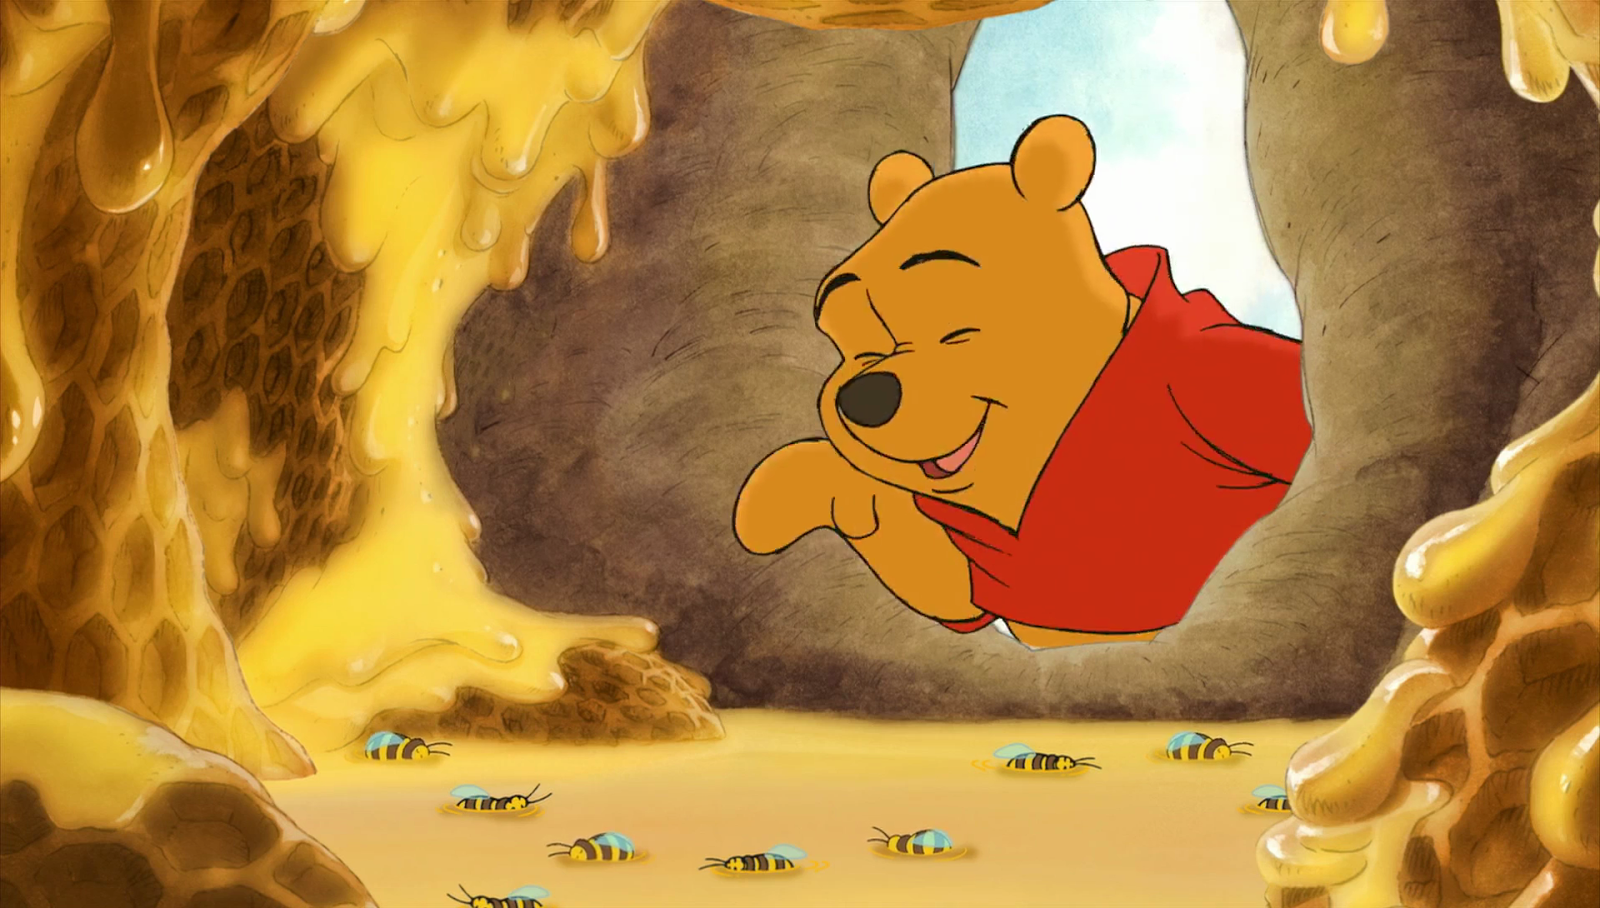 Winnie the pooh adventures. Винни-пух. Приключения Винни пух Уолт Дисней. Винни пух и Кристофер Робин.